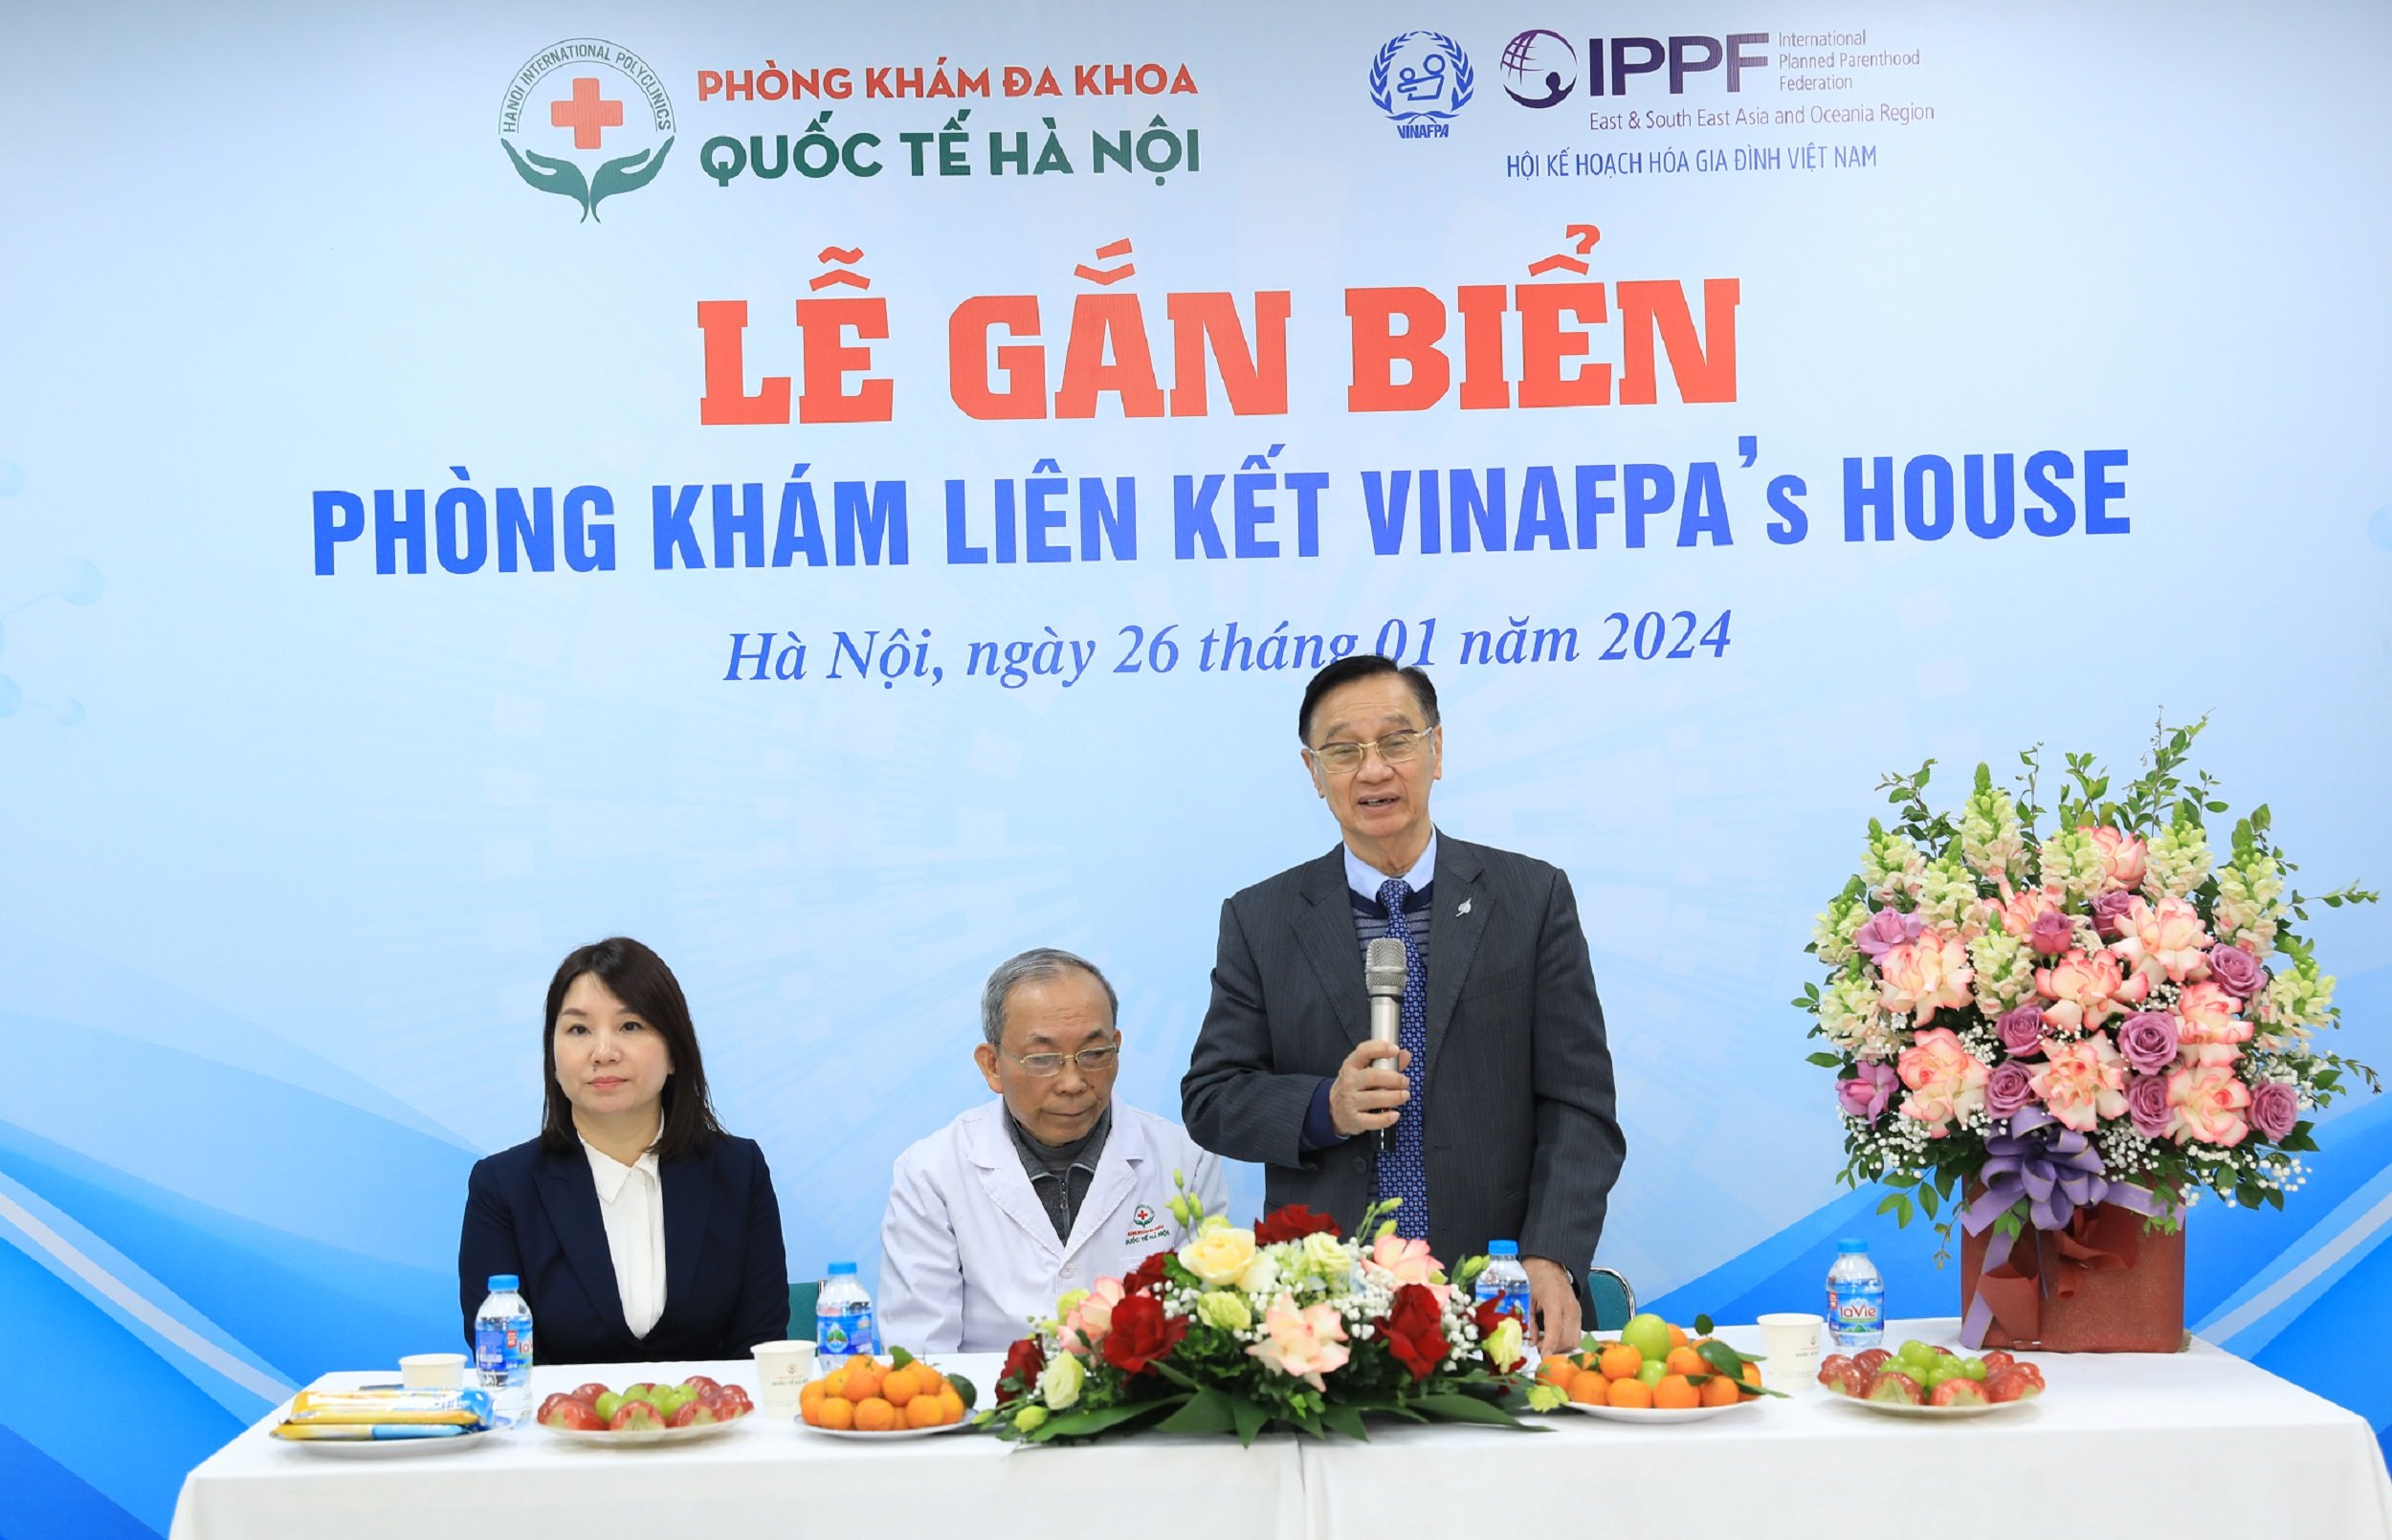 Phòng khám Đa khoa Quốc tế Hà Nội là thành viên liên kết của VINAFPA’s House